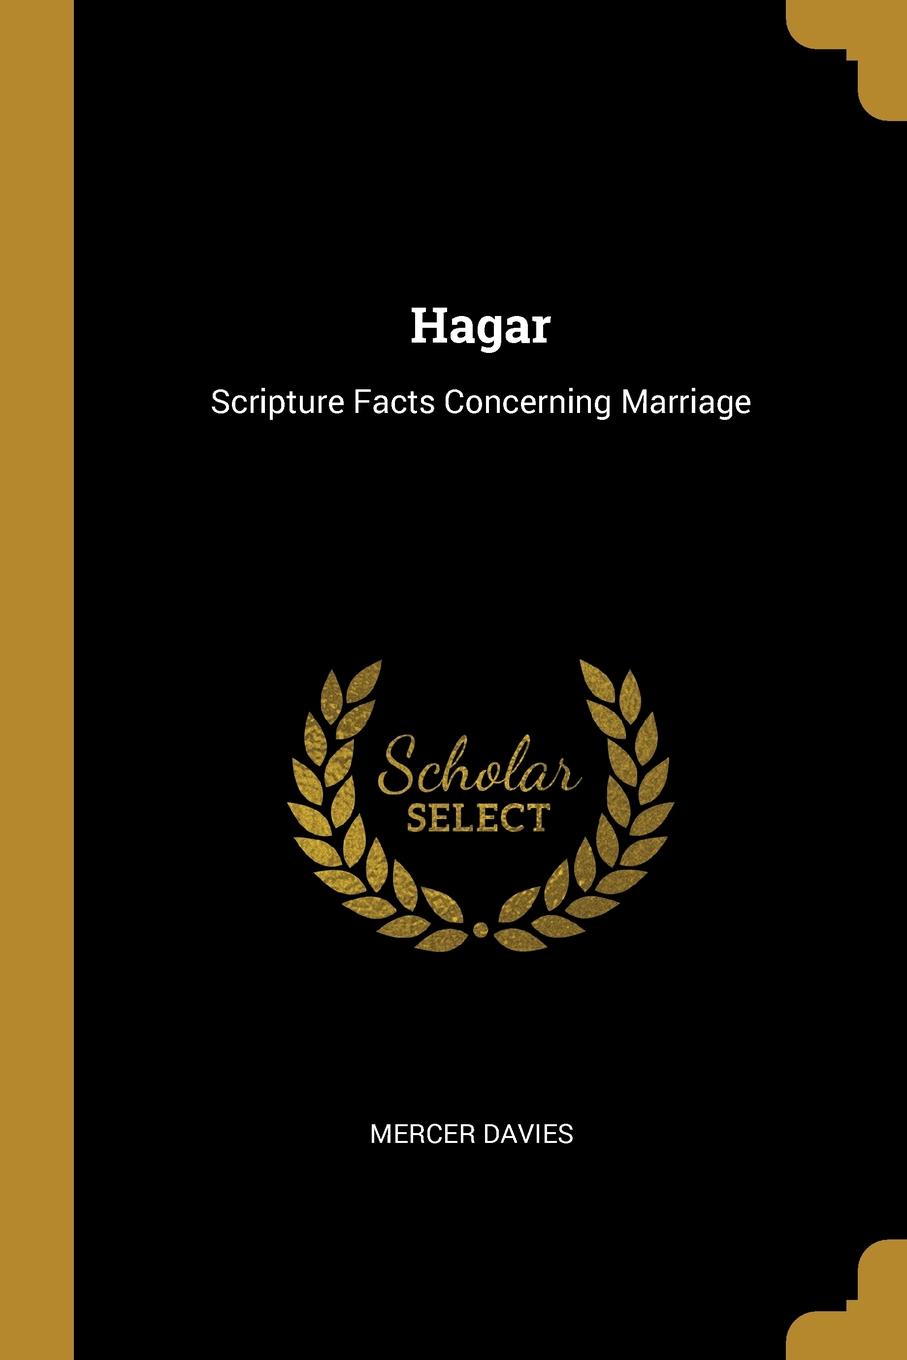 Hagar. Scripture Facts Concerning Marriage